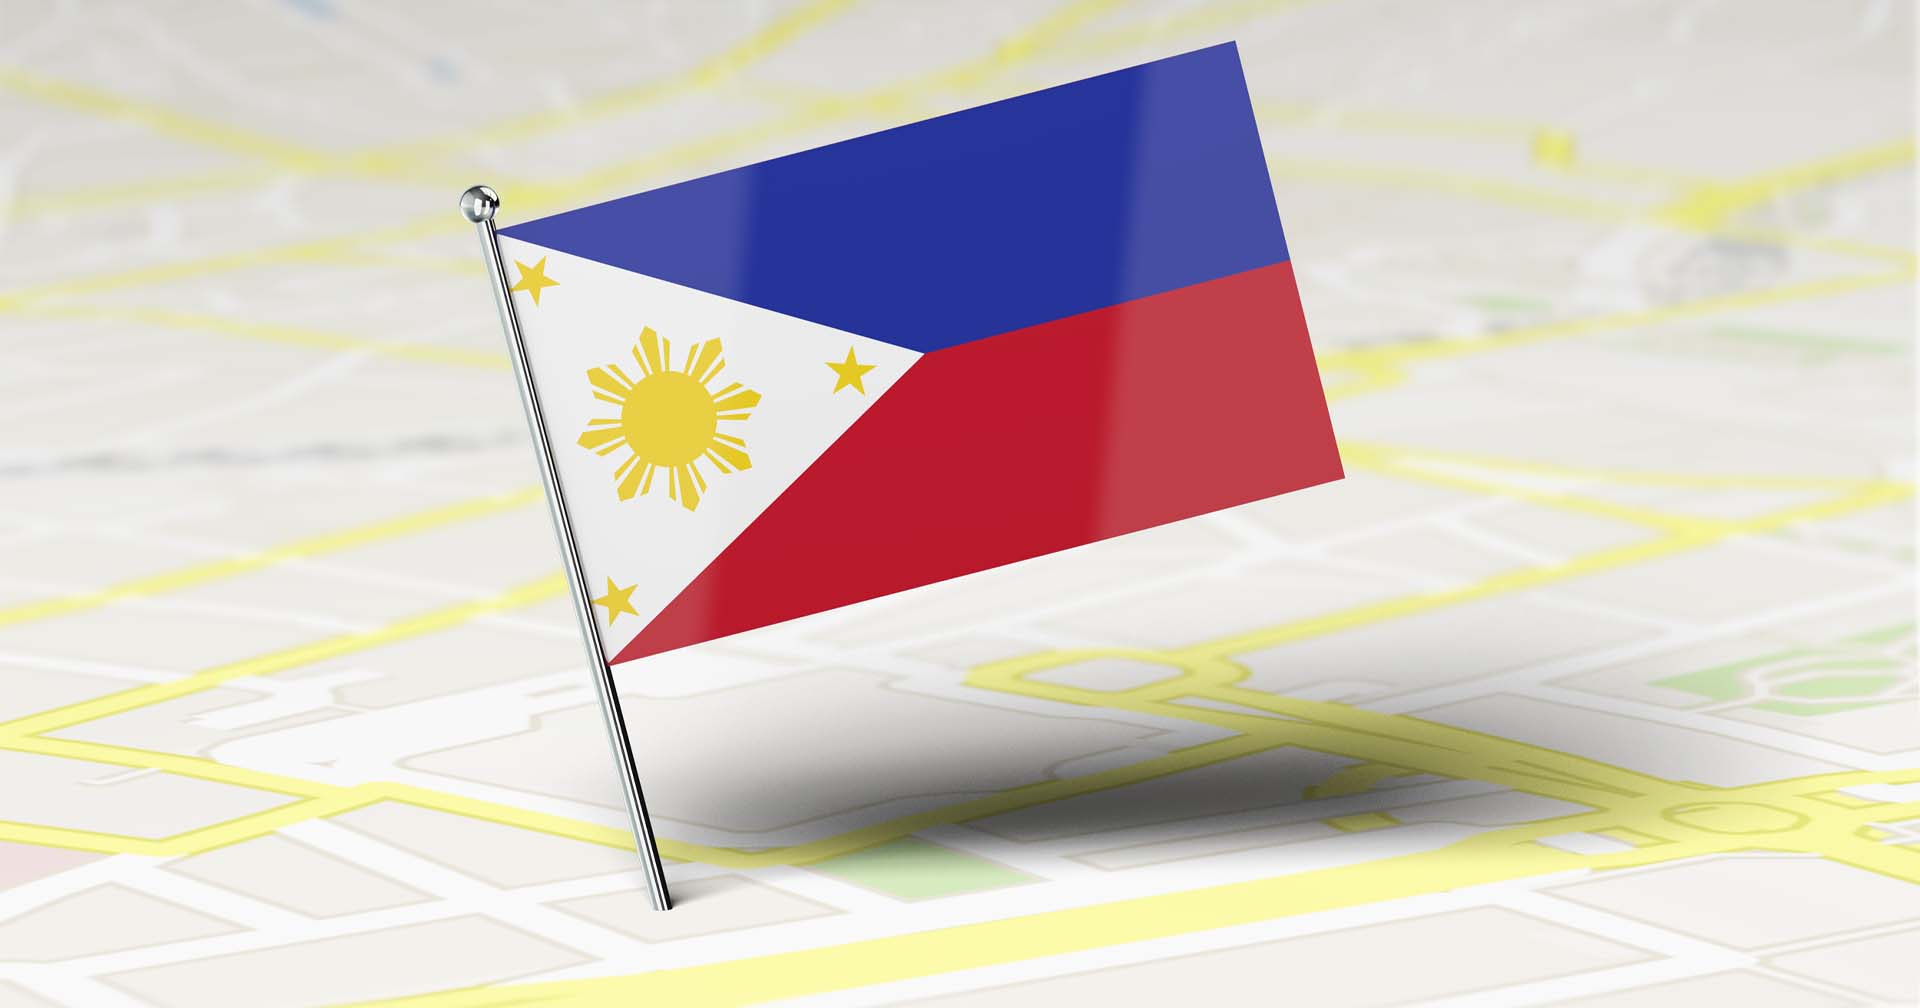 ‘ฟิลิปปินส์’ กำลังจะเป็นประเทศแรกในเอเชียอาคเนย์ที่จะได้ใช้งาน Starlink